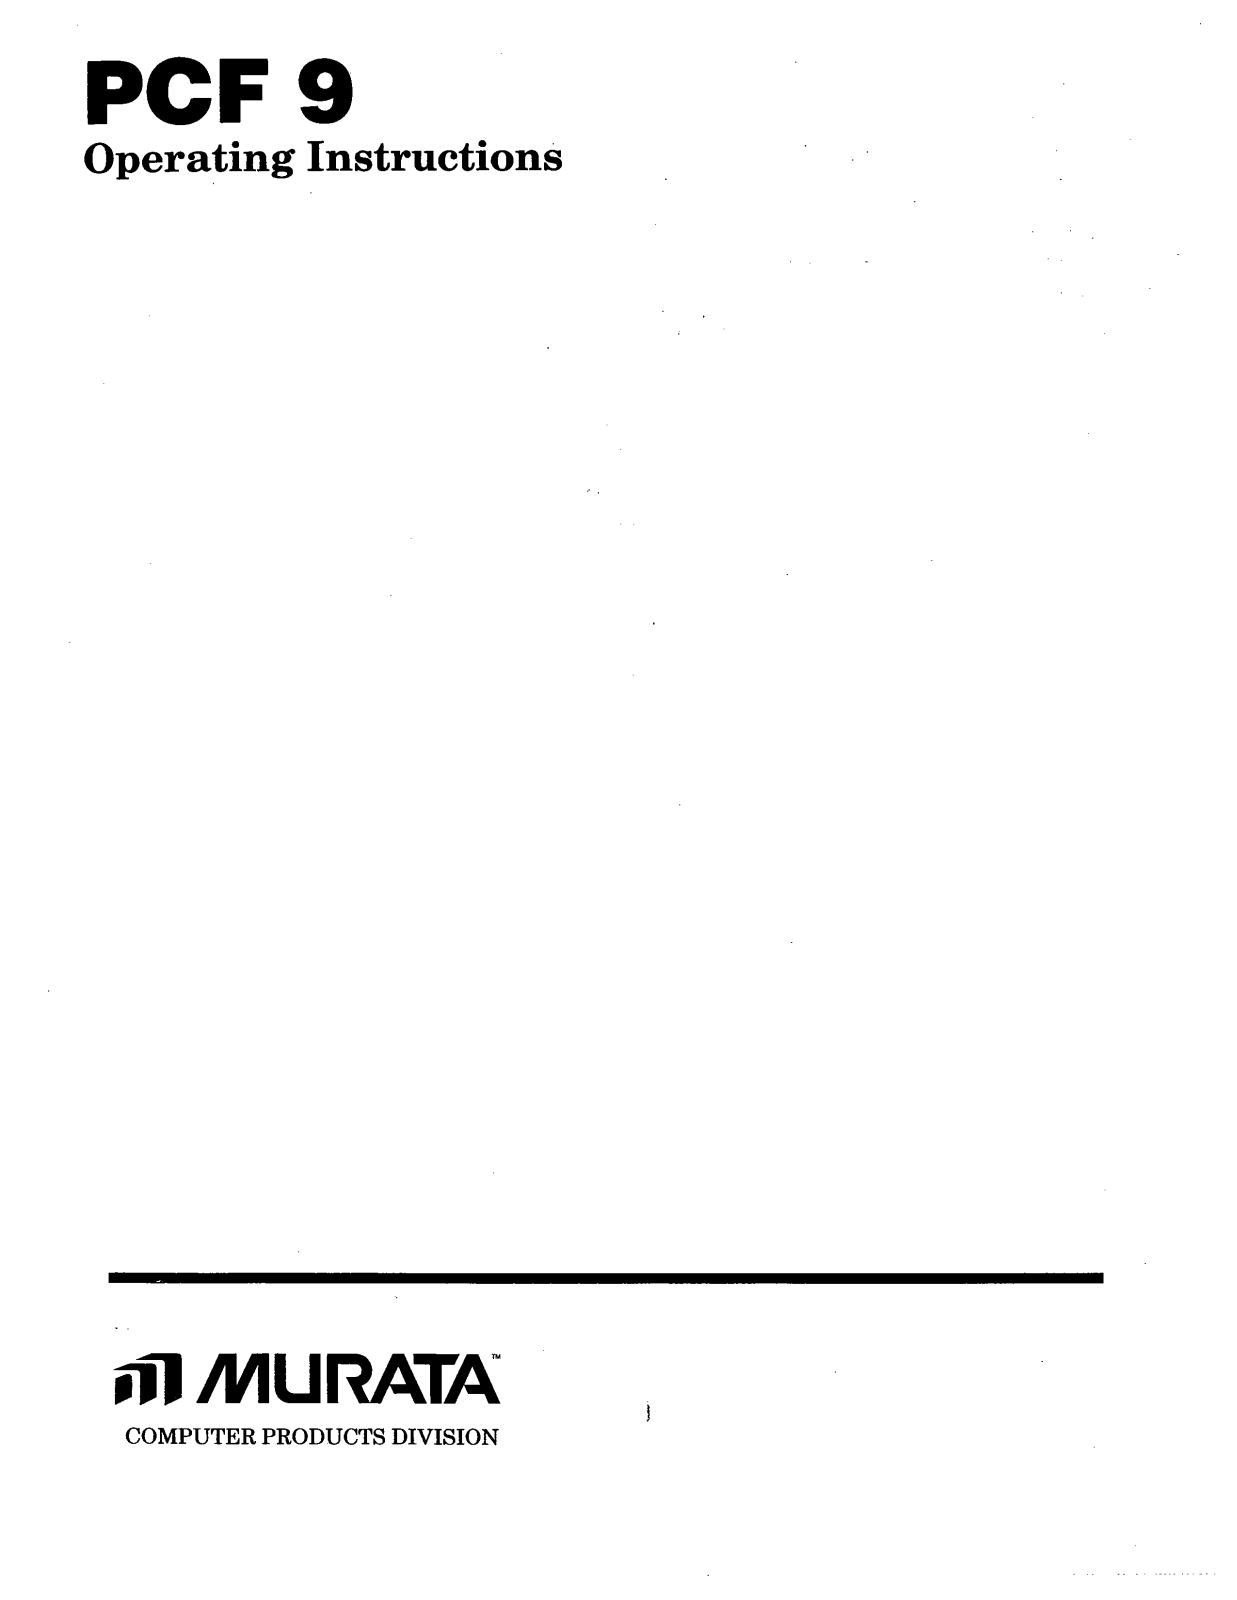 Muratec PCF9 Operating Manual